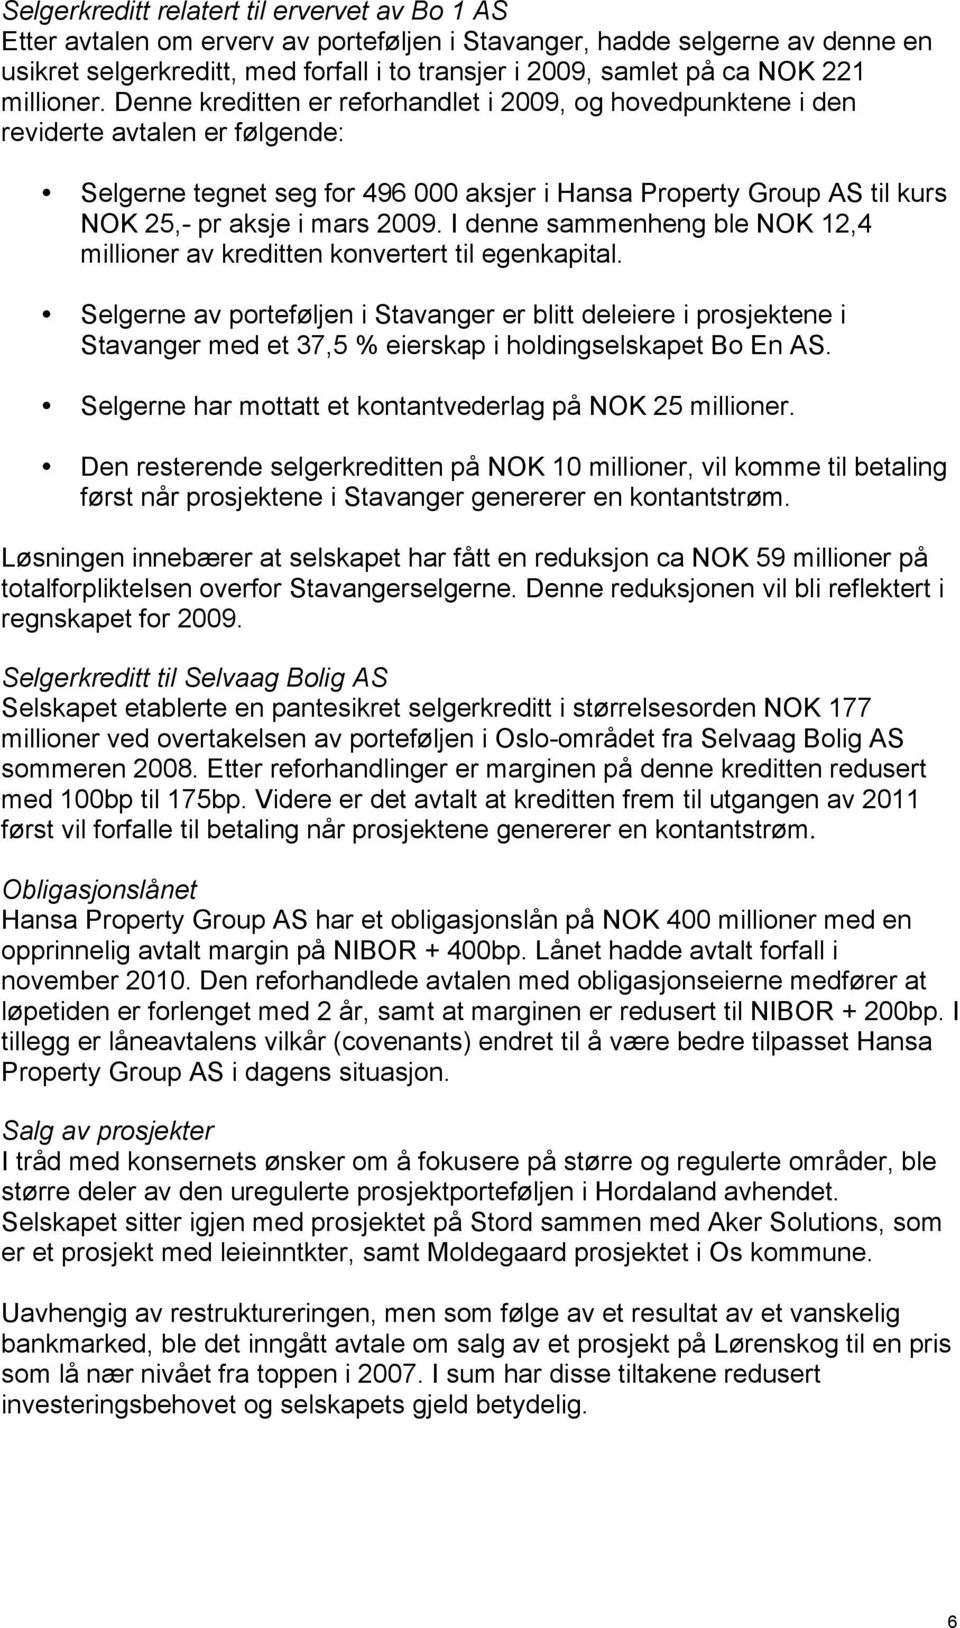 Denne kreditten er reforhandlet i 2009, og hovedpunktene i den reviderte avtalen er følgende: Selgerne tegnet seg for 496 000 aksjer i Hansa Property Group AS til kurs NOK 25,- pr aksje i mars 2009.